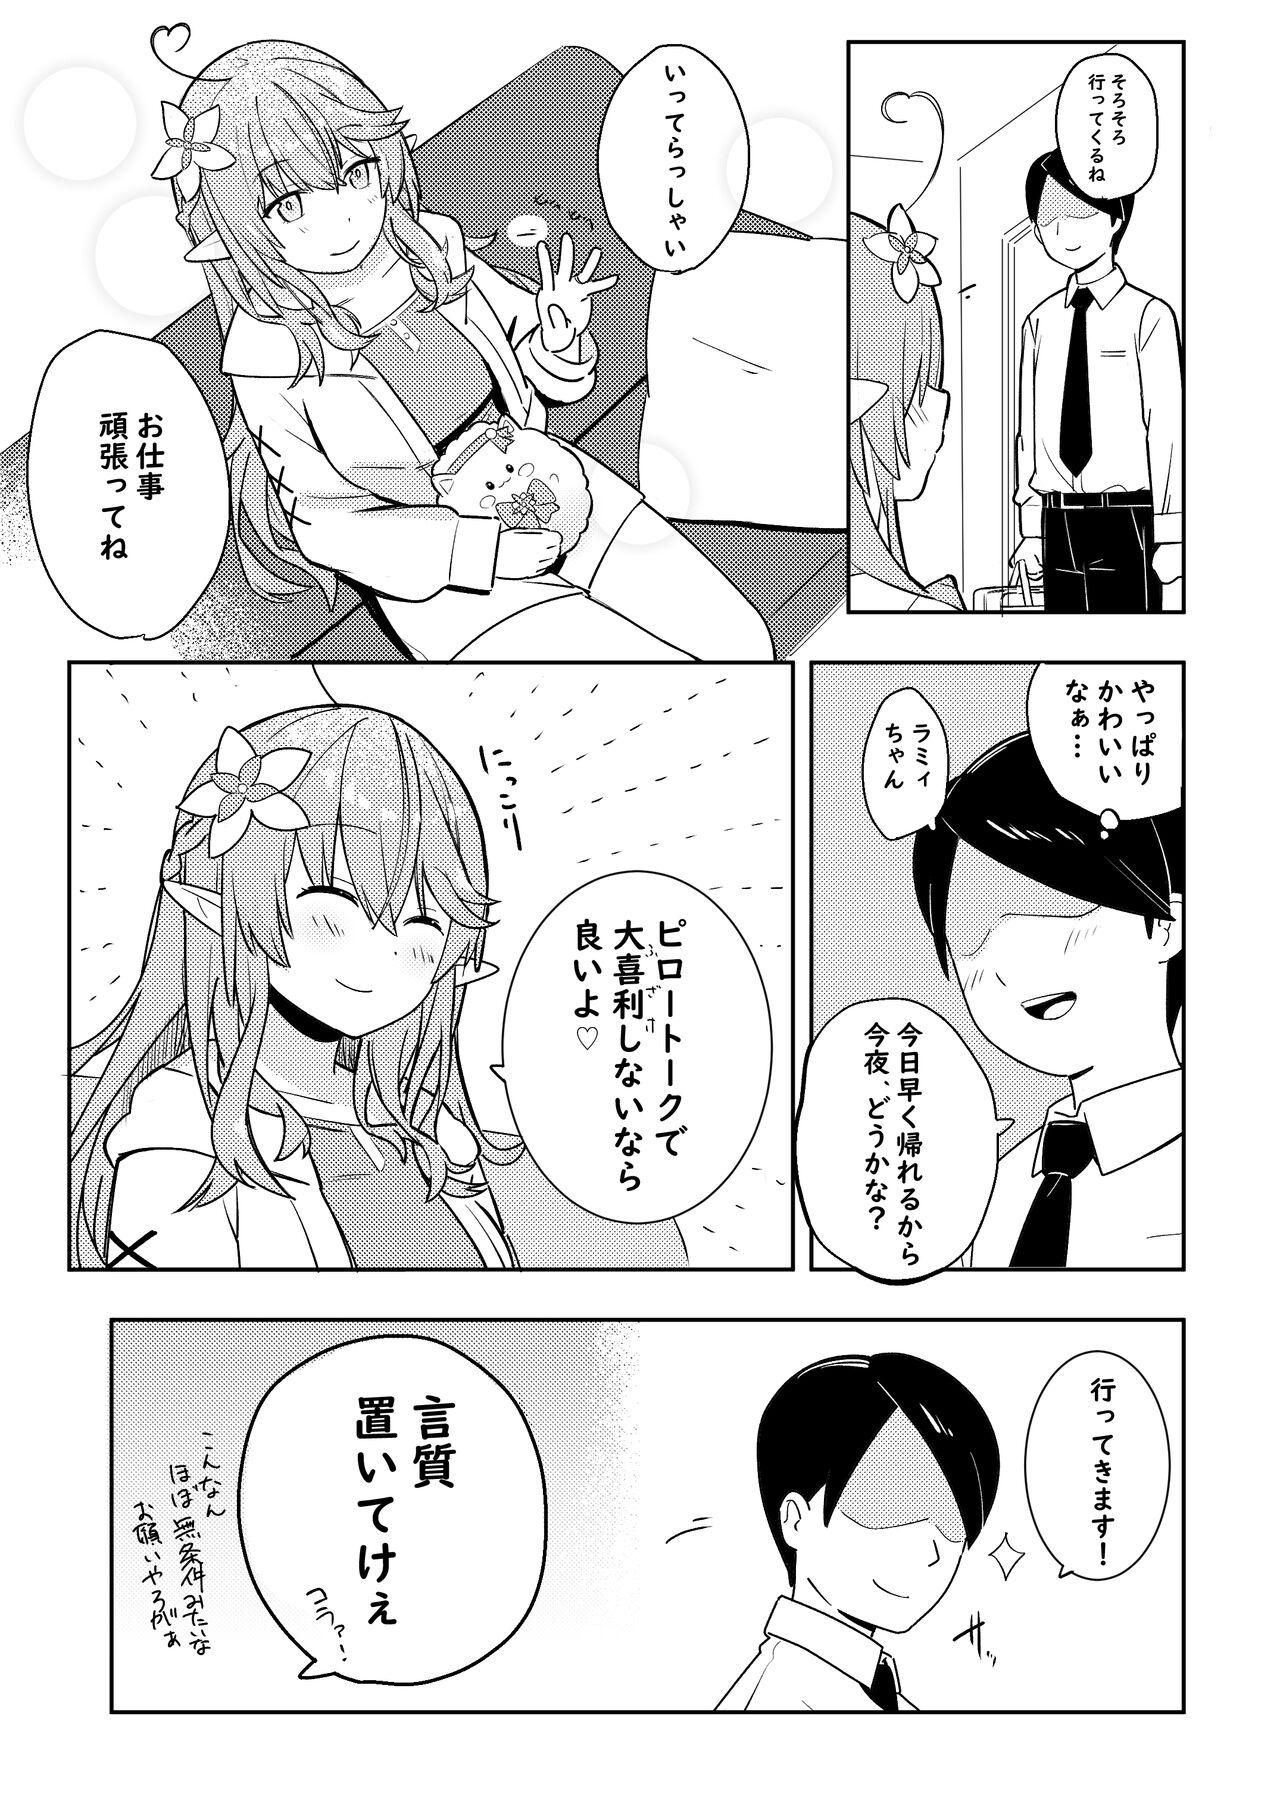 Petite Teen Twitter Short Manga - Hololive Analfucking - Page 4